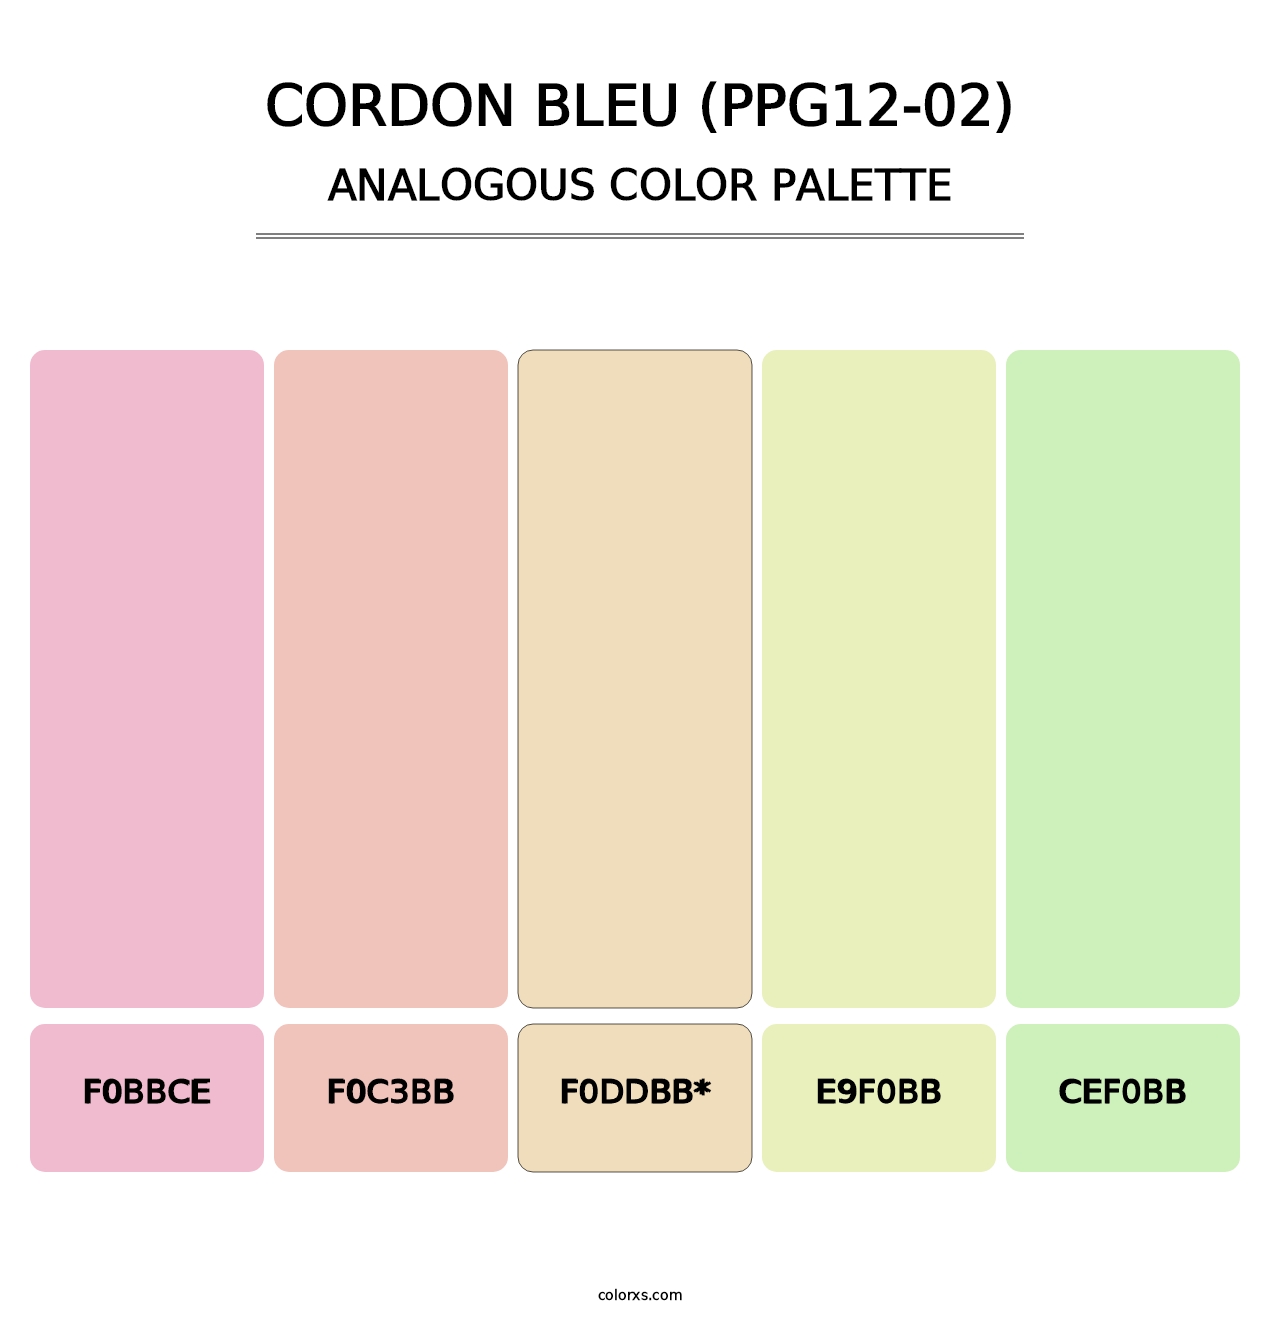 Cordon Bleu (PPG12-02) - Analogous Color Palette